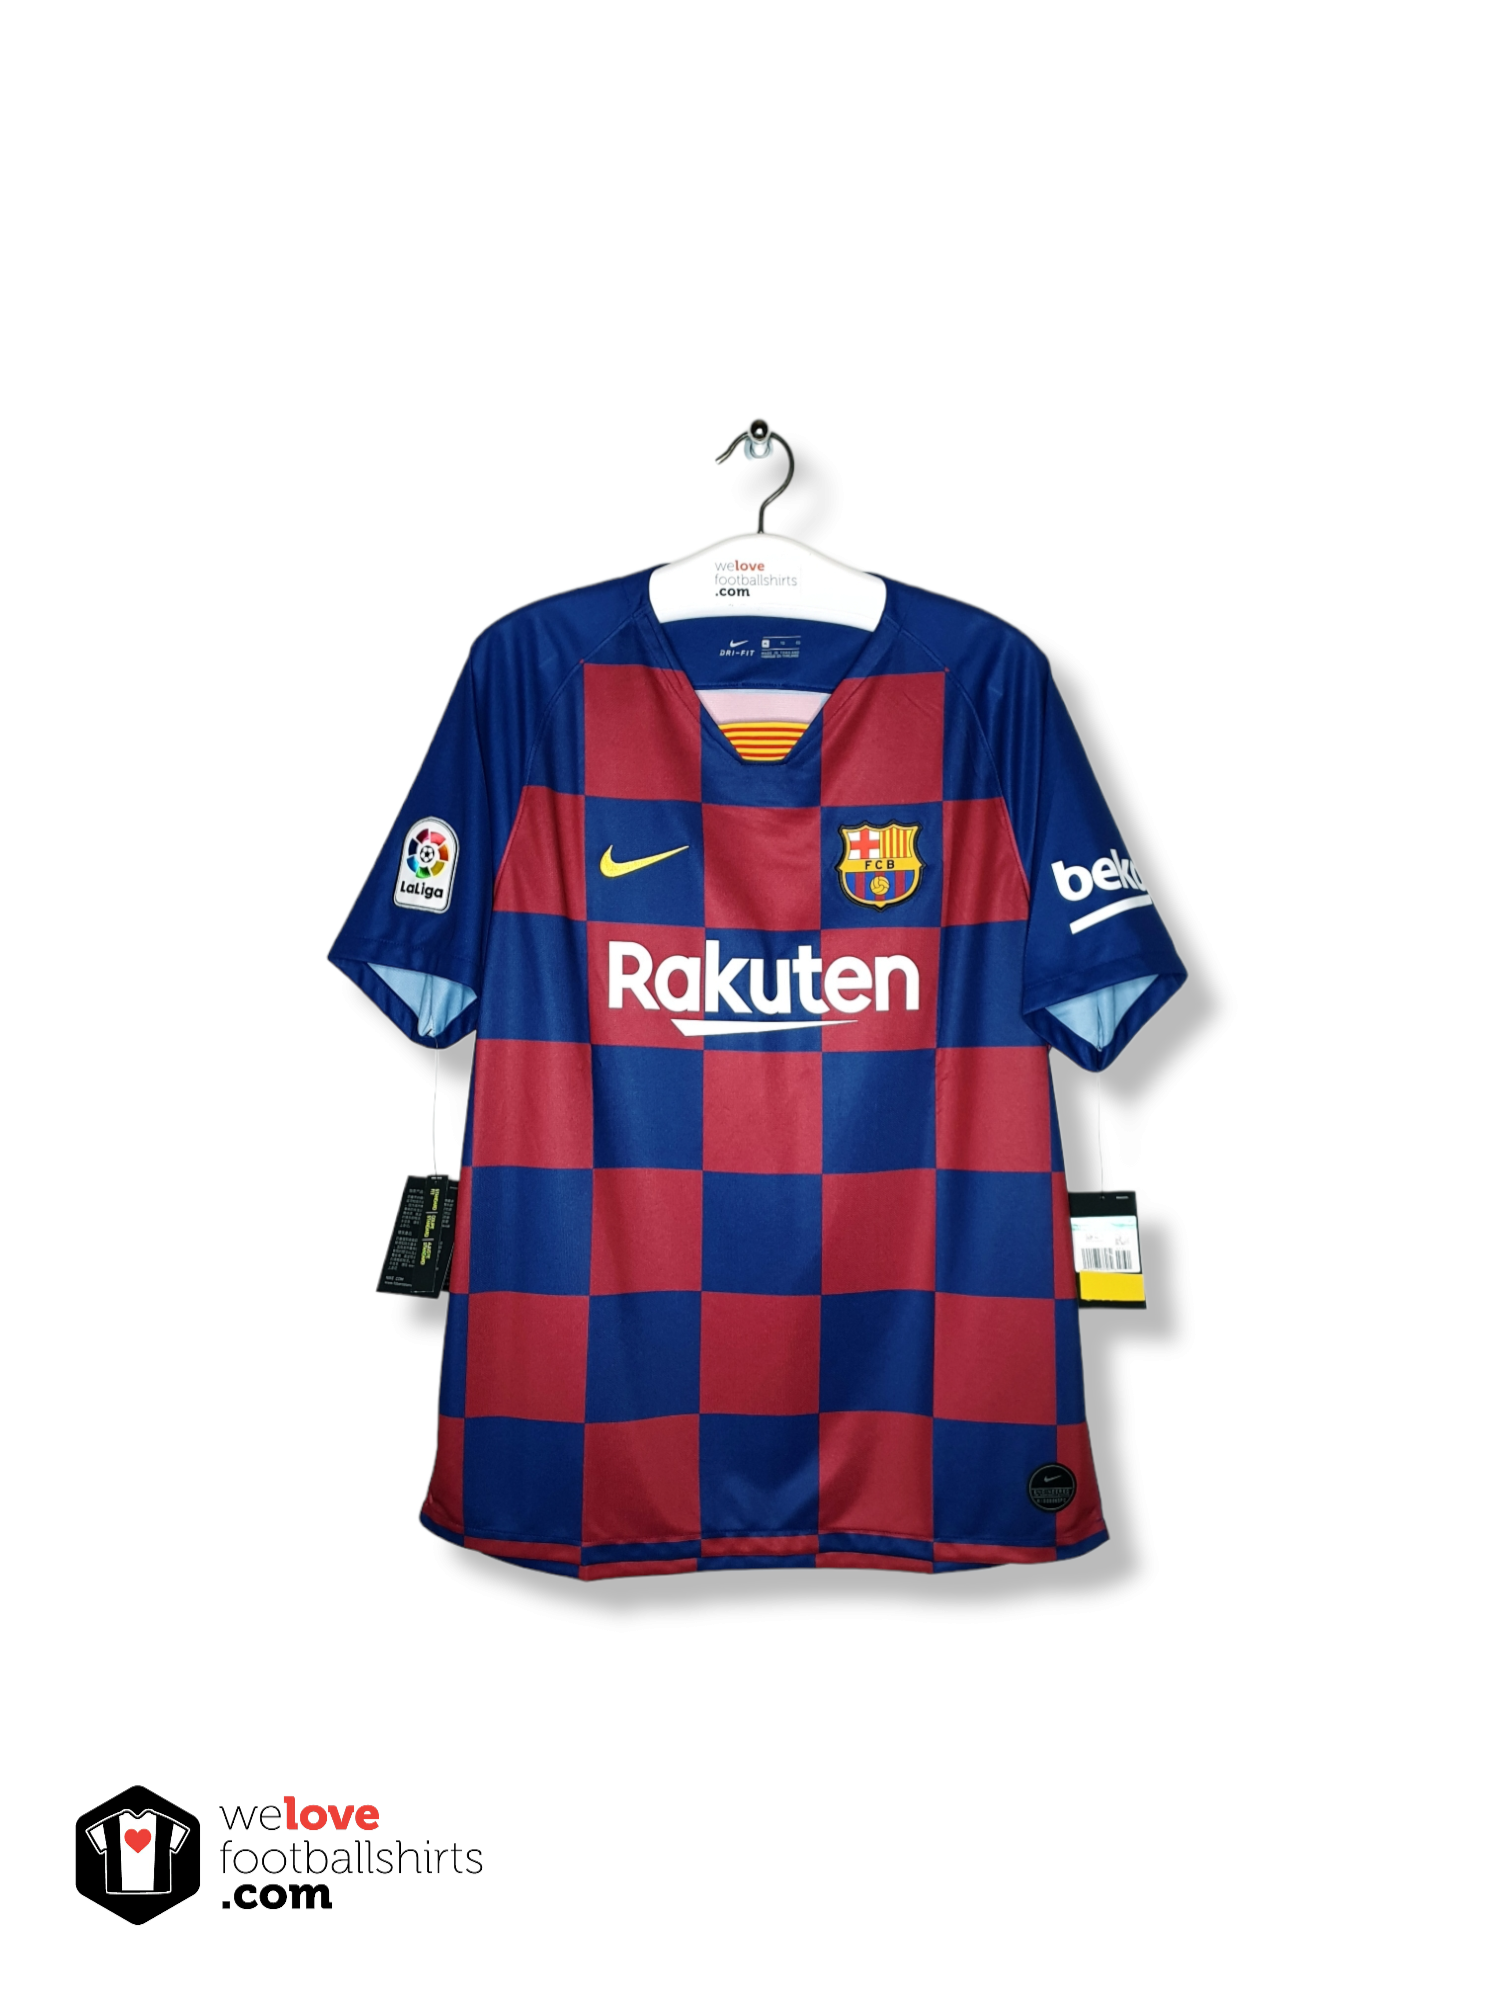 moederlijk niets Onheil Nike voetbalshirt FC Barcelona 2019/20 - Welovefootballshirts.com